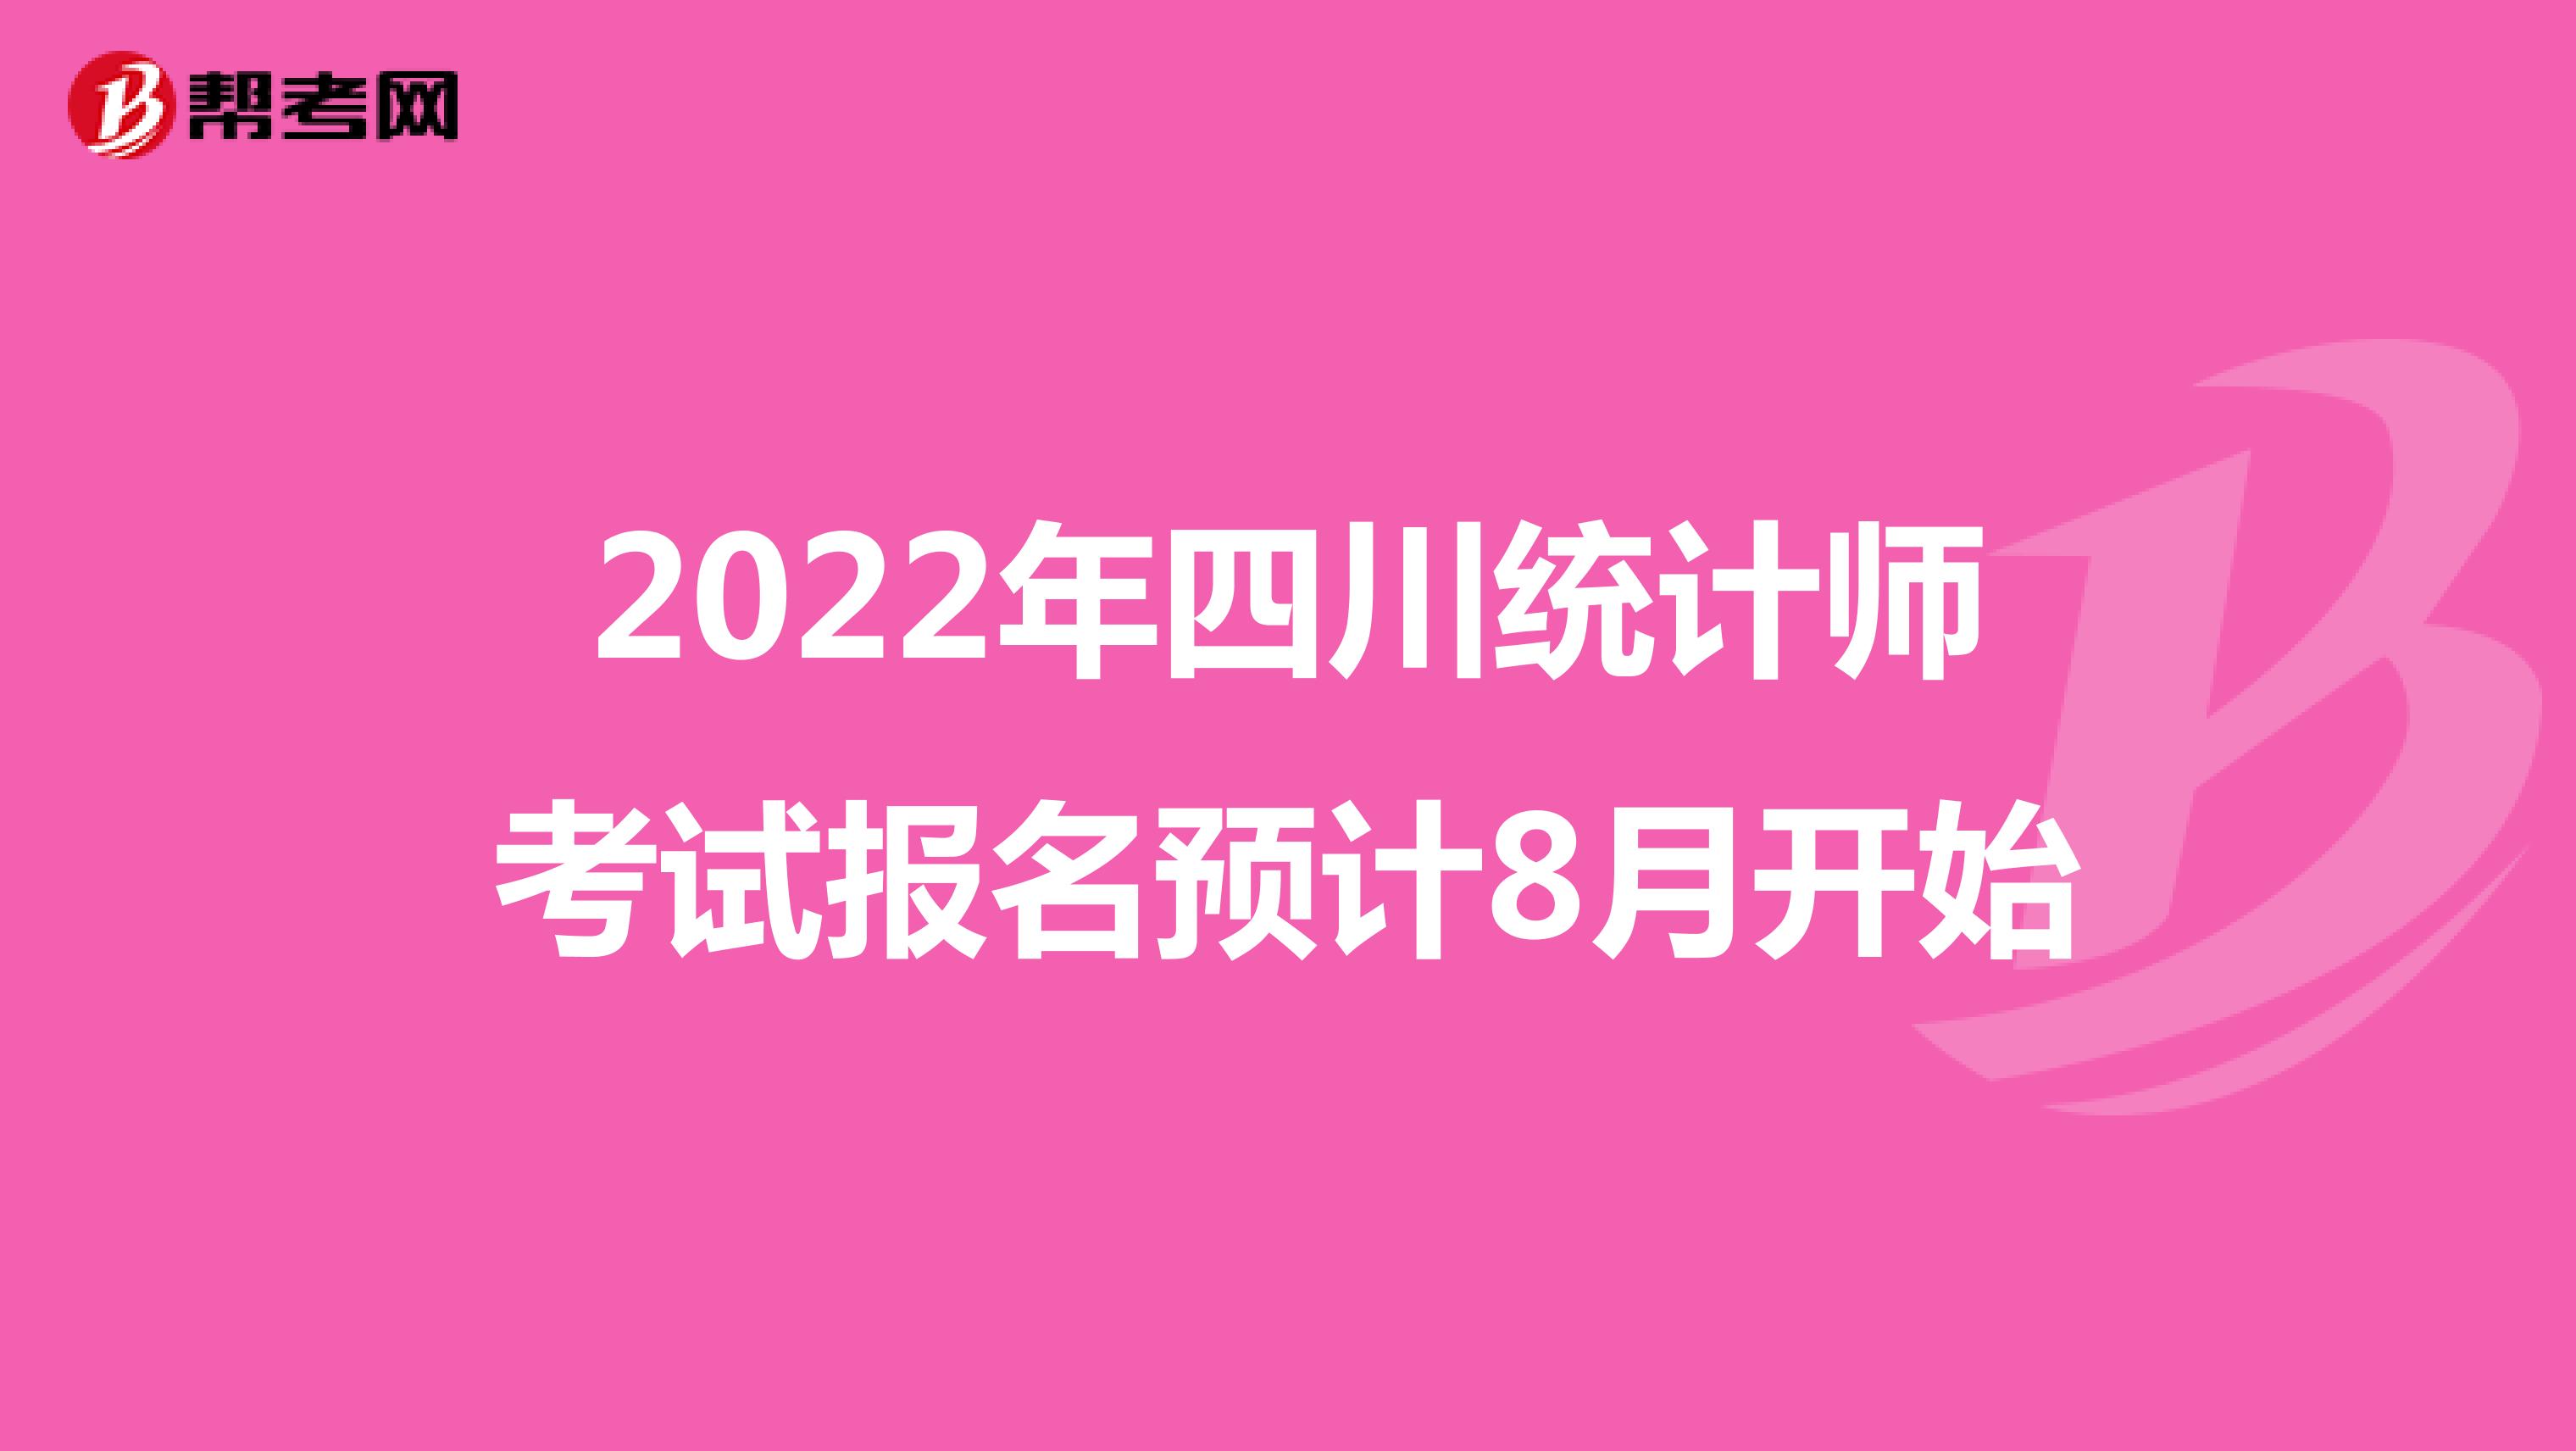 2022年四川统计师考试报名预计8月开始